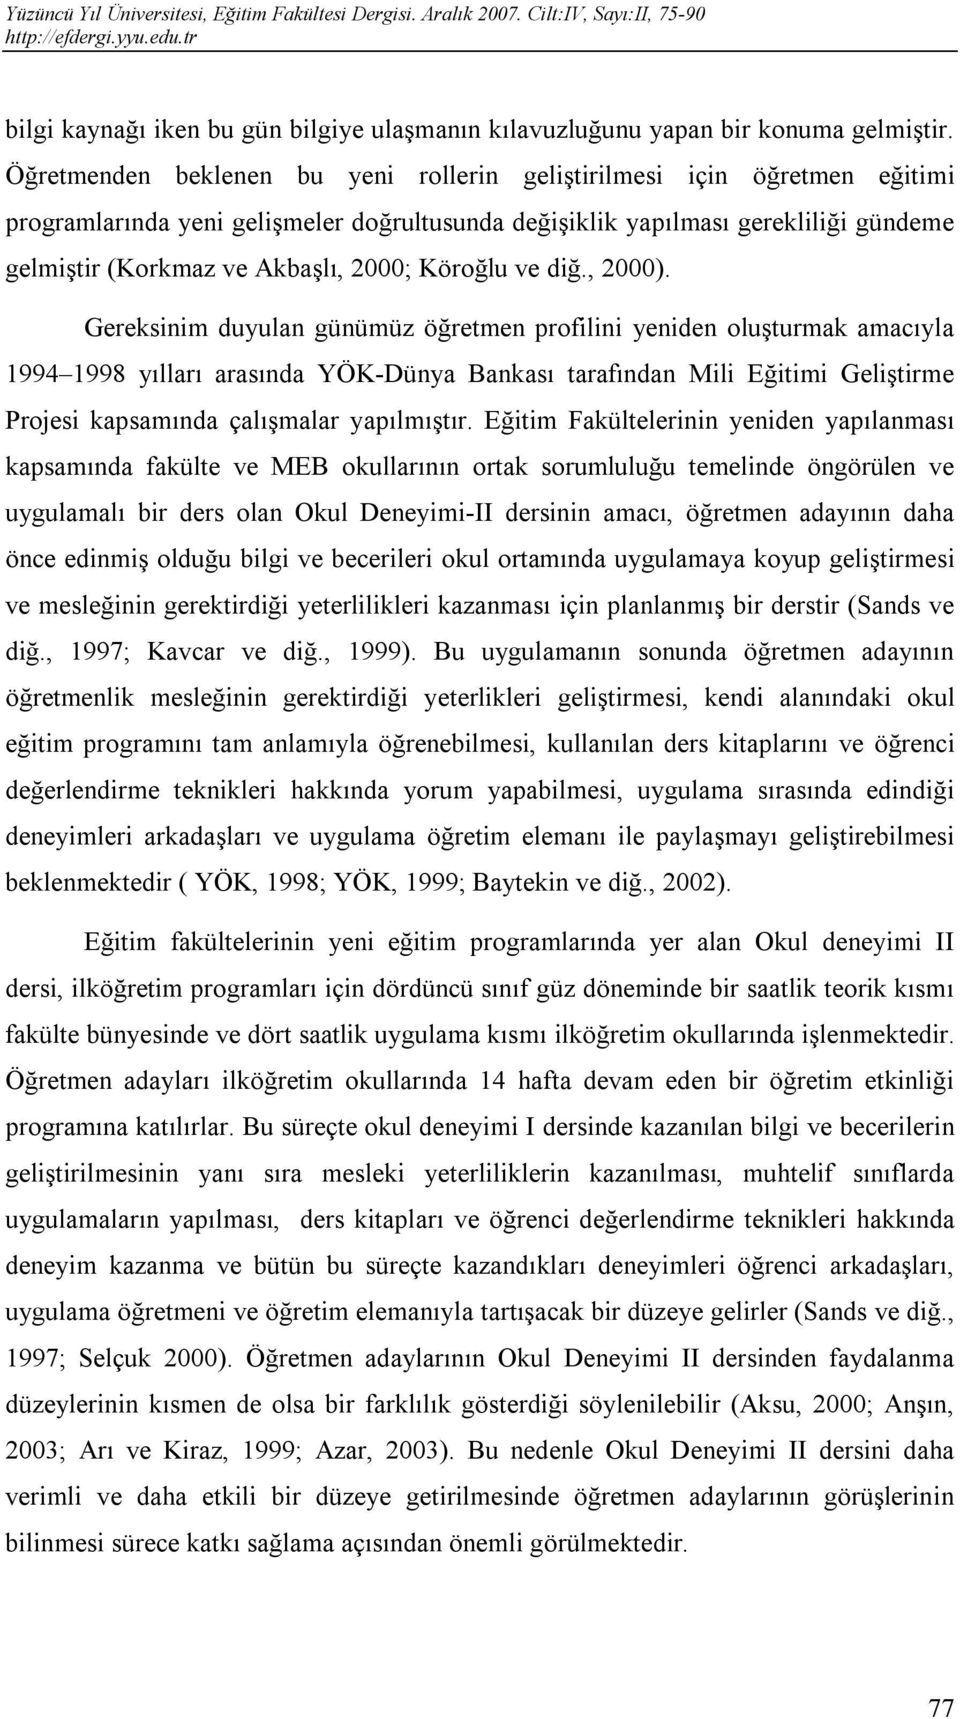 Köroğlu ve diğ., 2000).